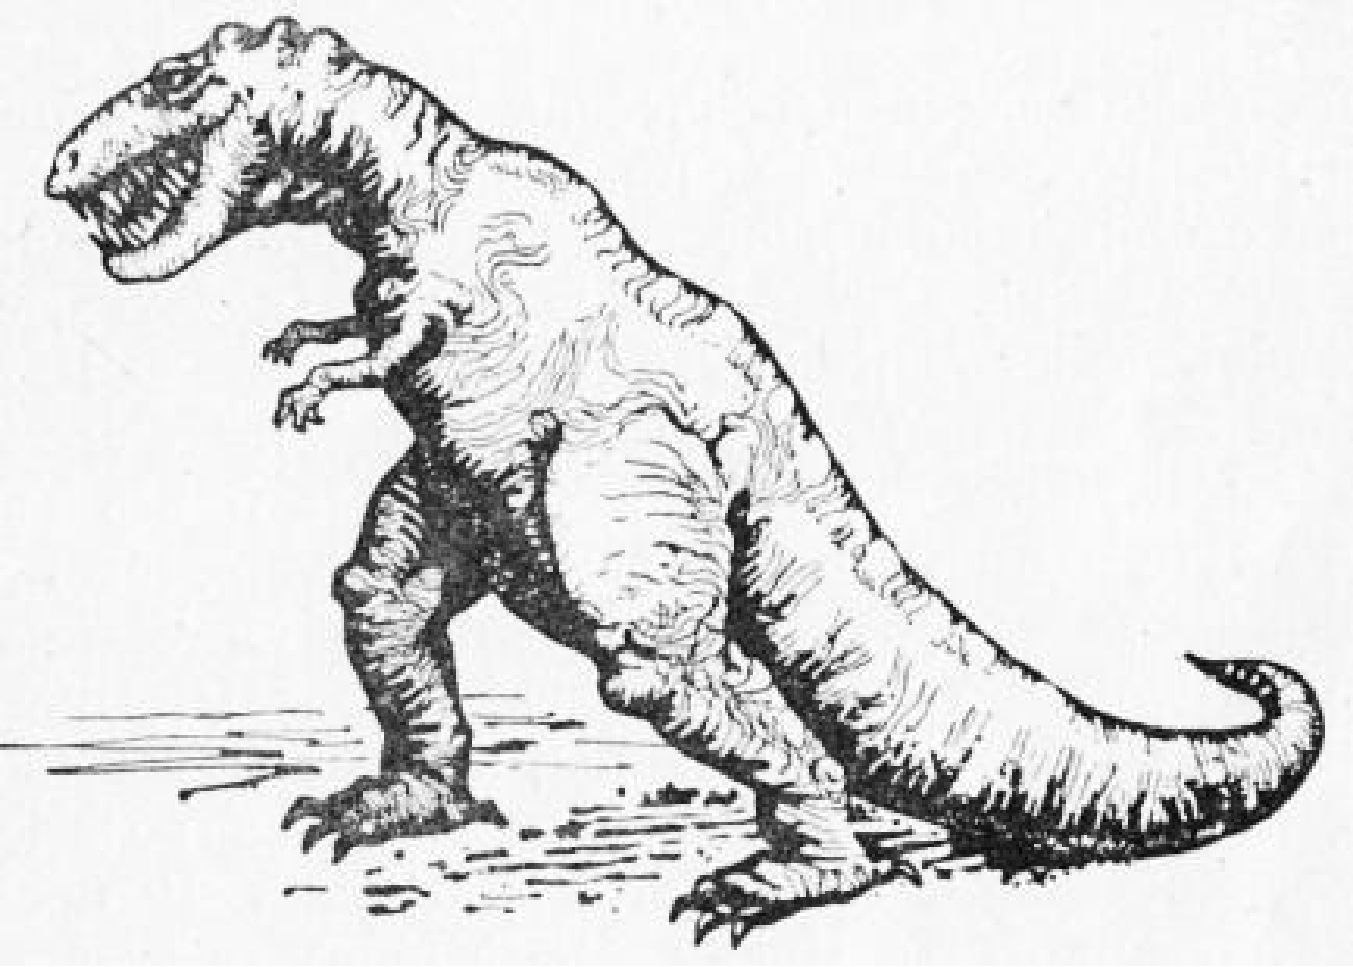 Хищный ящер — тарбозавр, обитатель Центральной Азии в позднемеловое время. Рисунок художника А.Б. Маслобоева